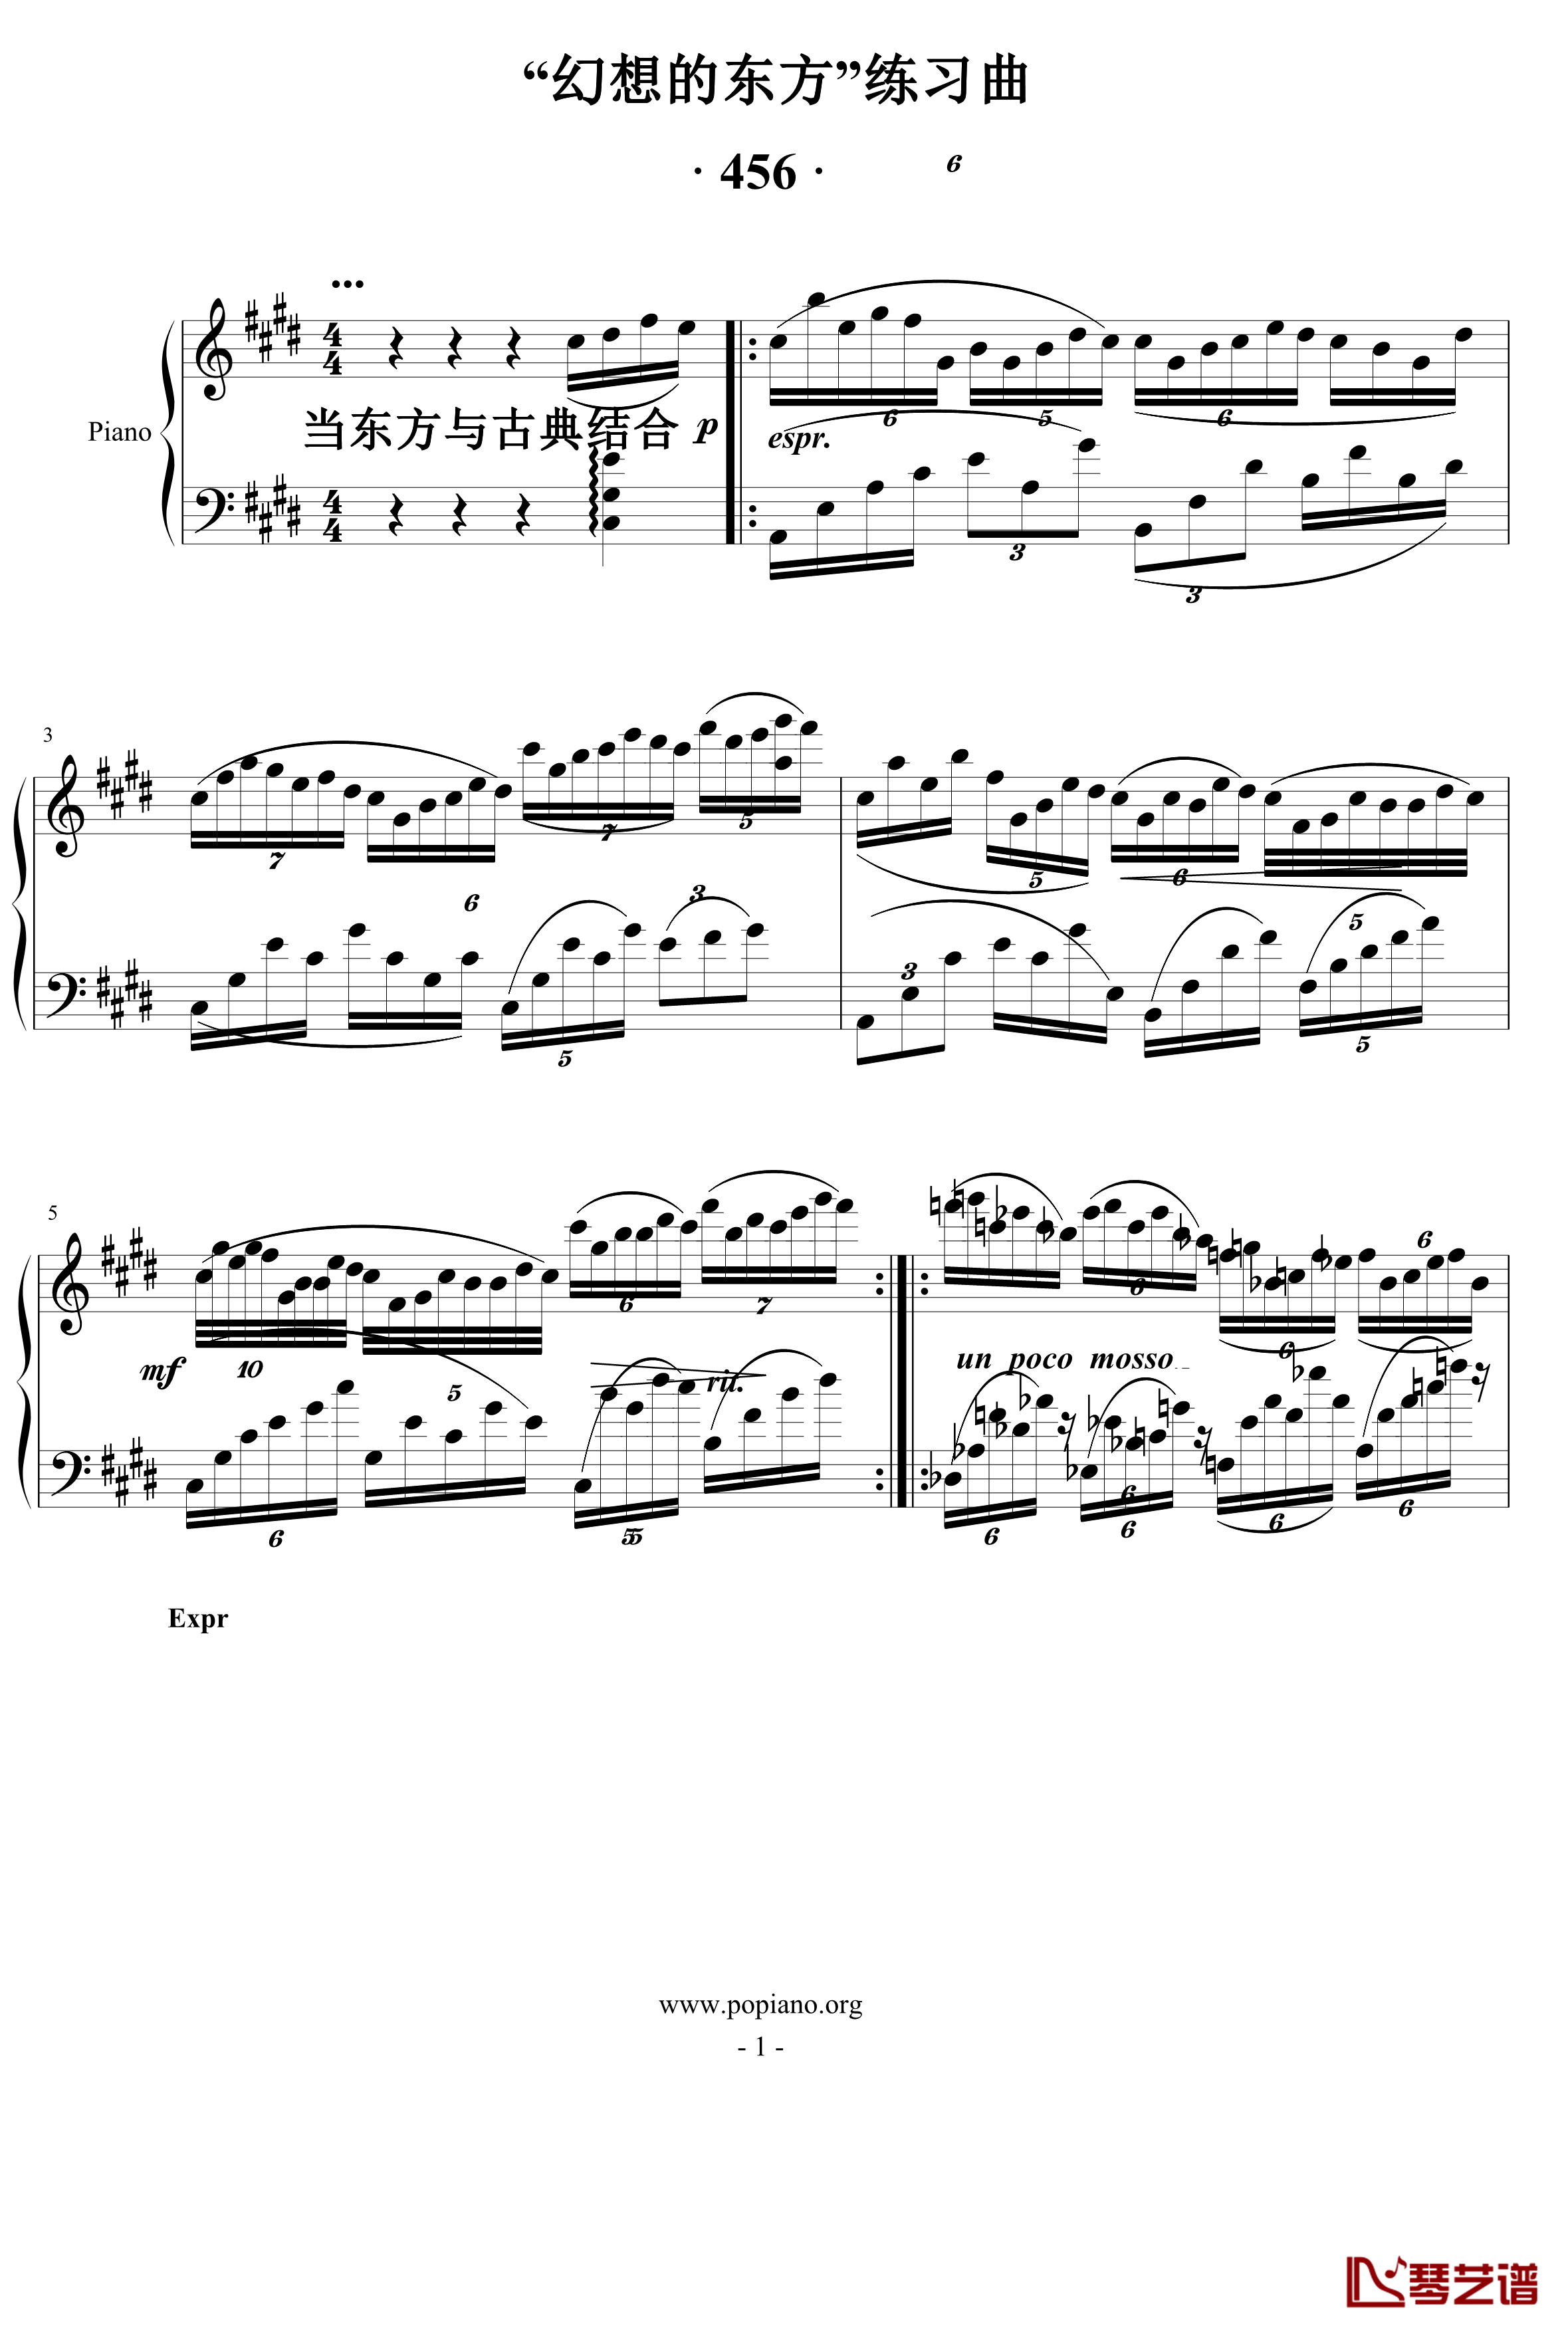 东方的古典幻奏钢琴谱-nyride1